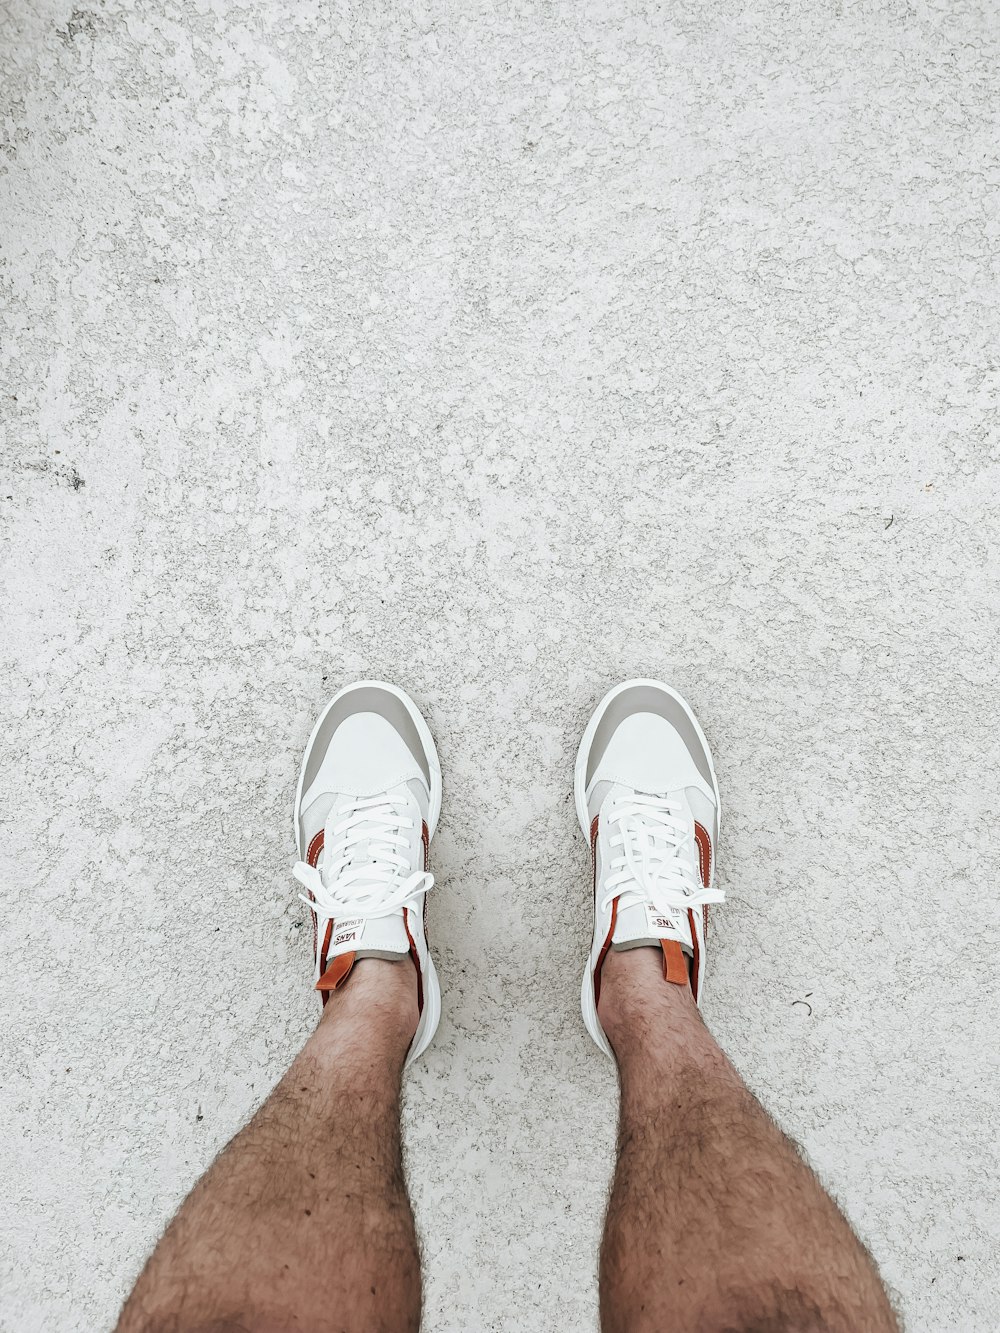 as pernas de uma pessoa com sapatos brancos em